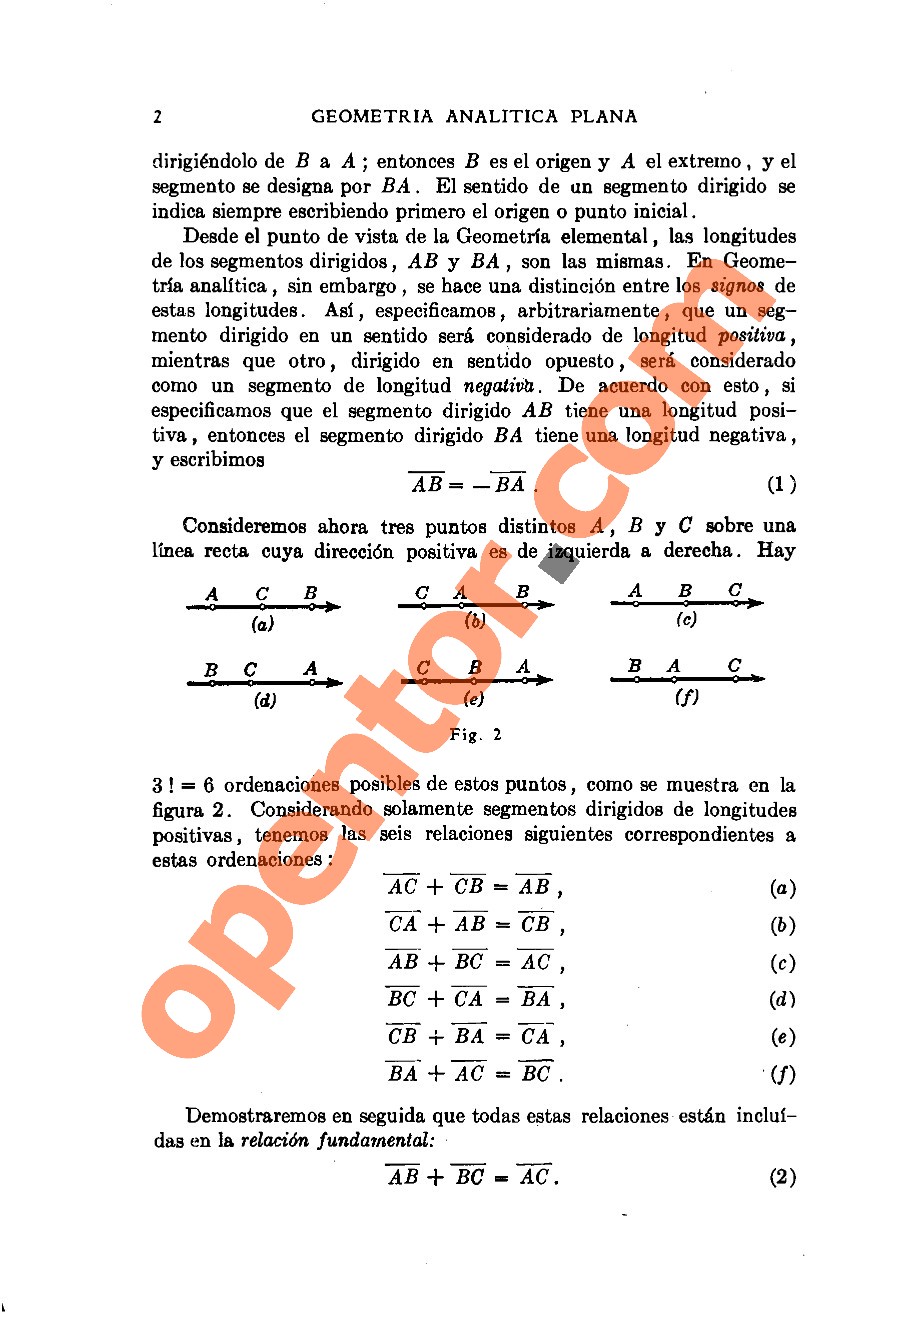 Geometría Analítica de Lehmann - Página 2